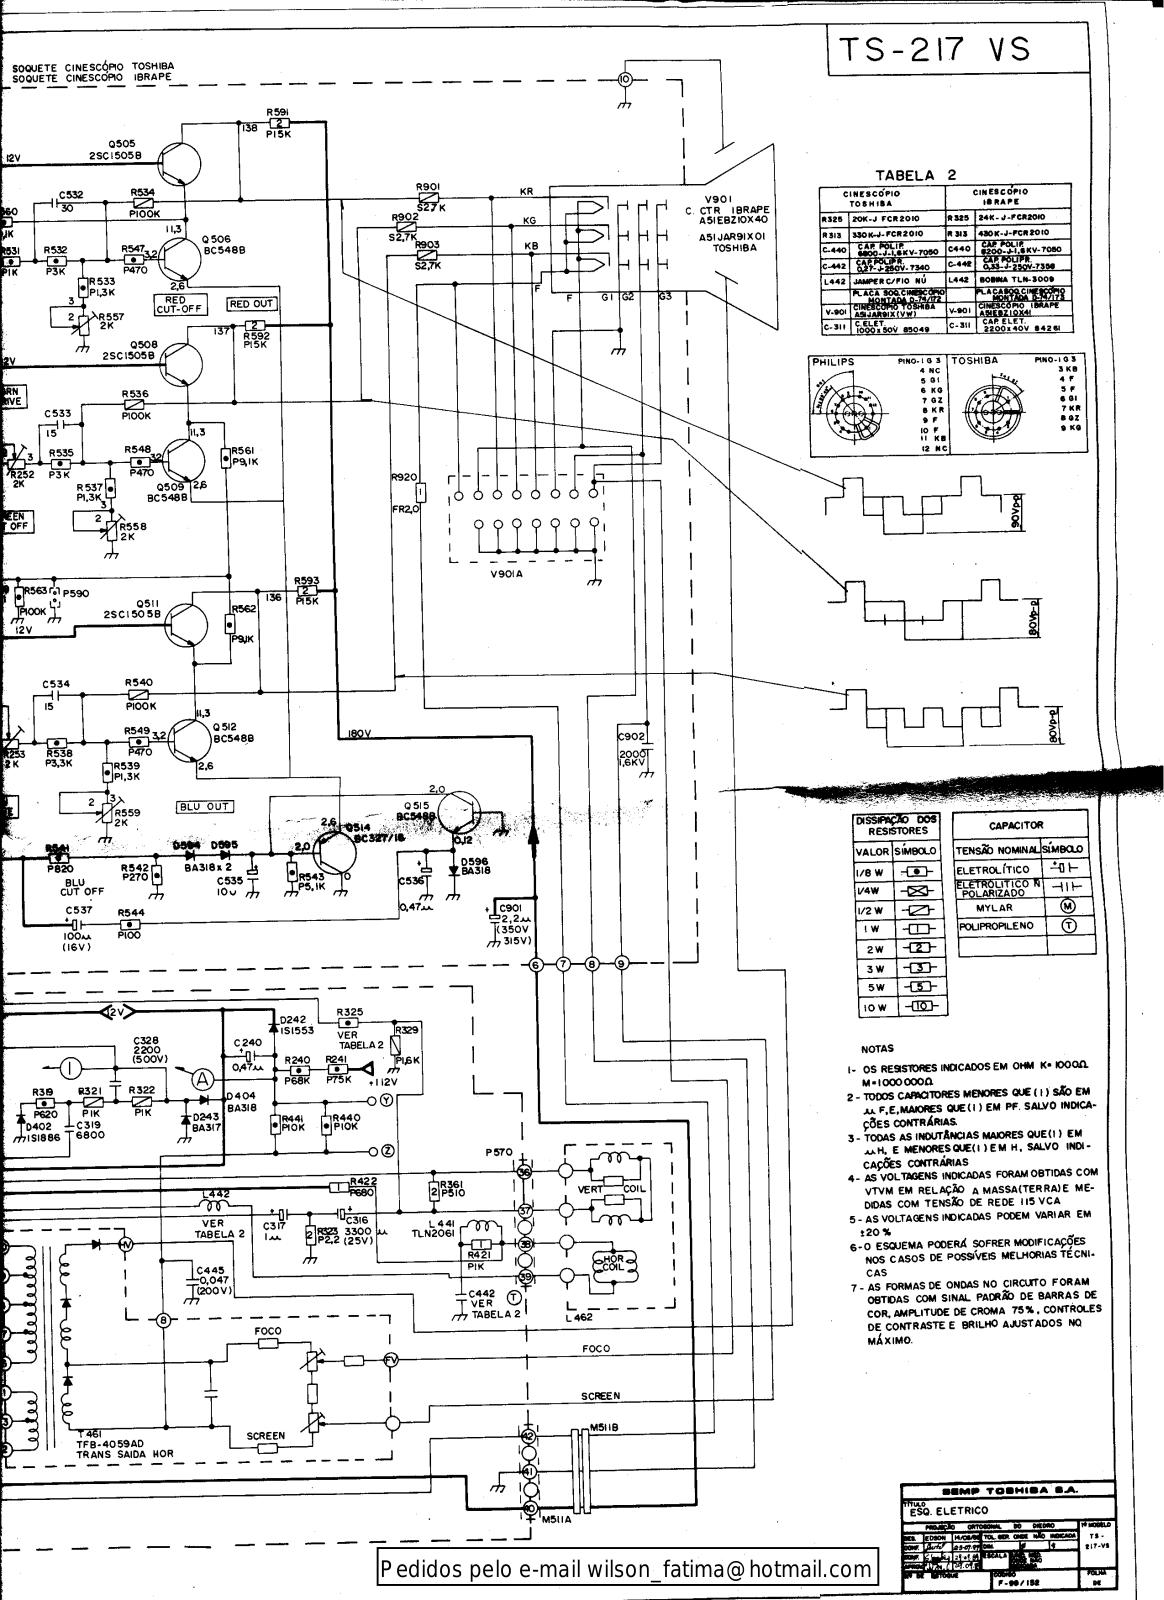 Toshiba TS-217VS Schematic